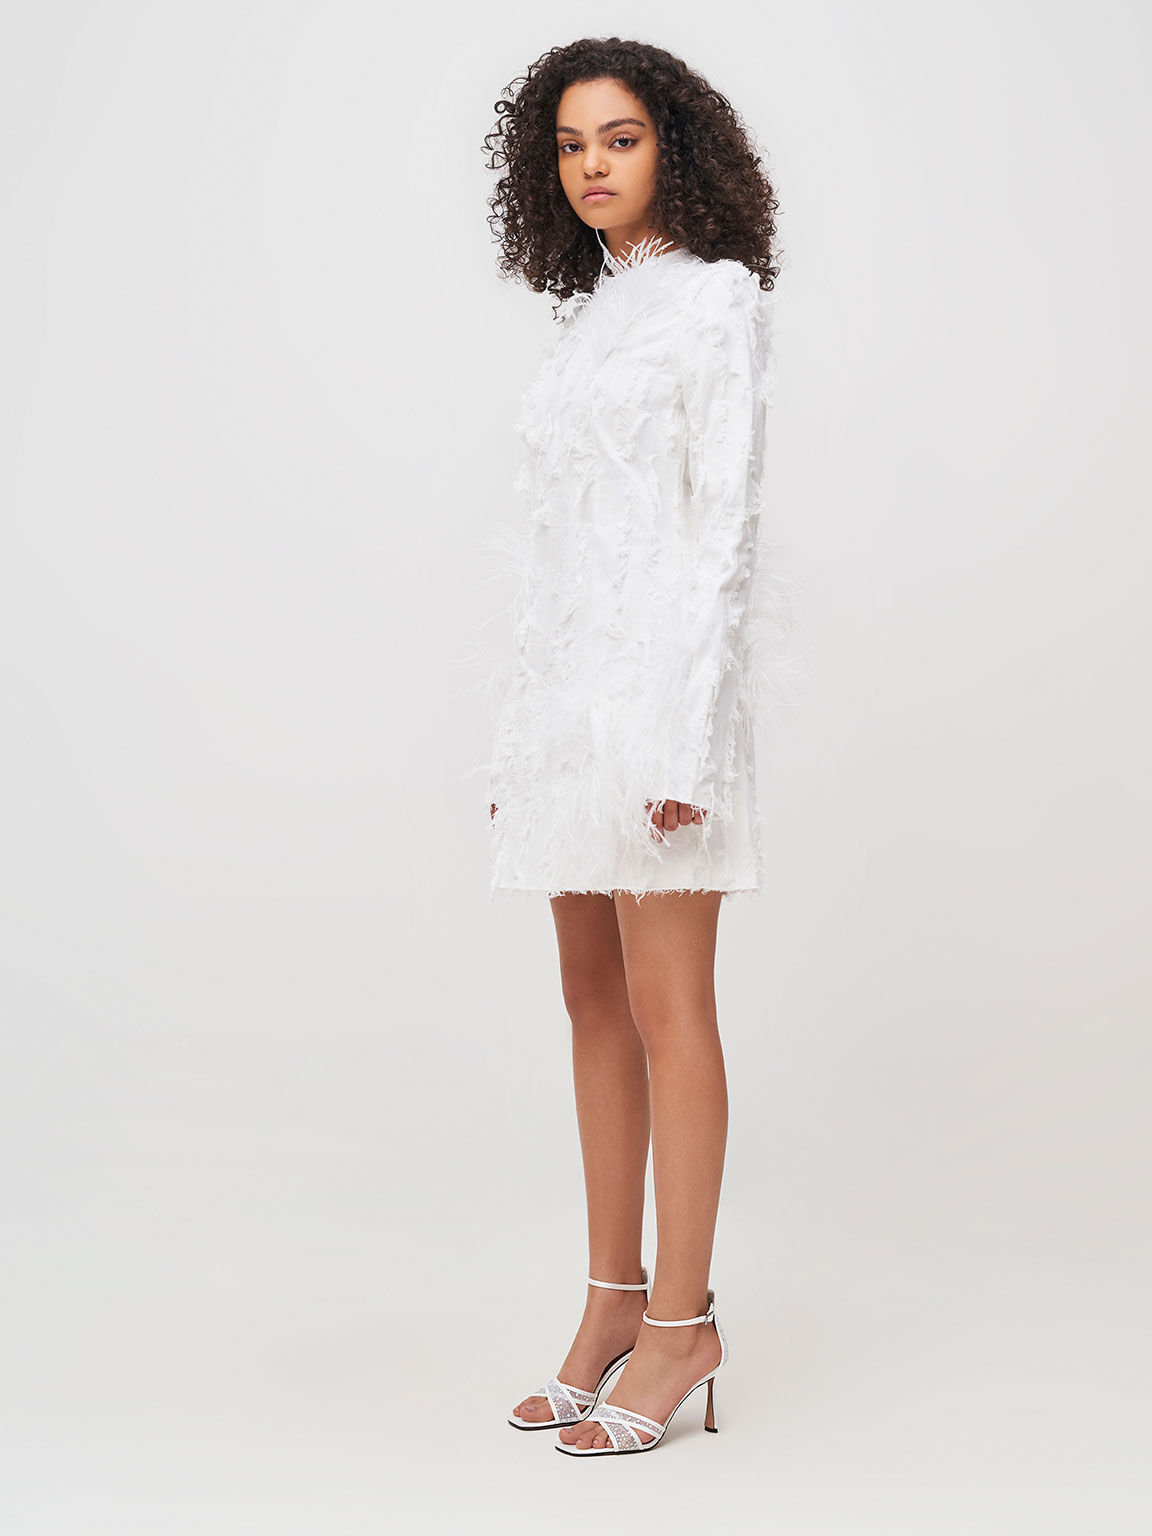 The Bridal Collection: Sandal Blythe Mesh & Satin Embellished, White, hi-res